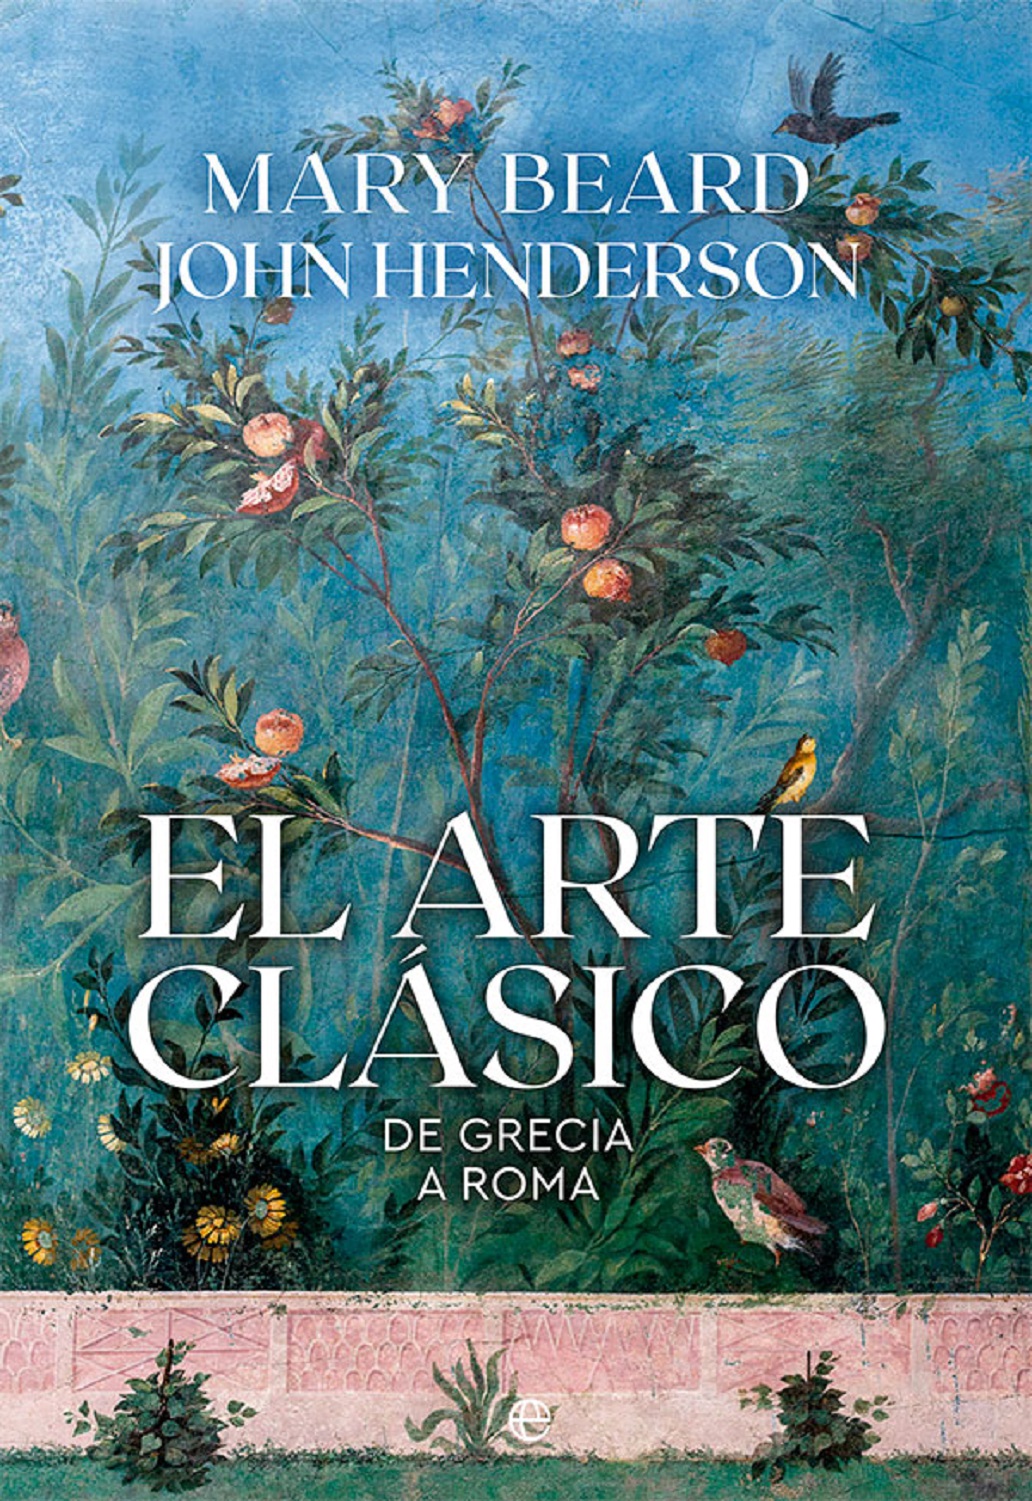 Imagen de portada del libro El arte clásico